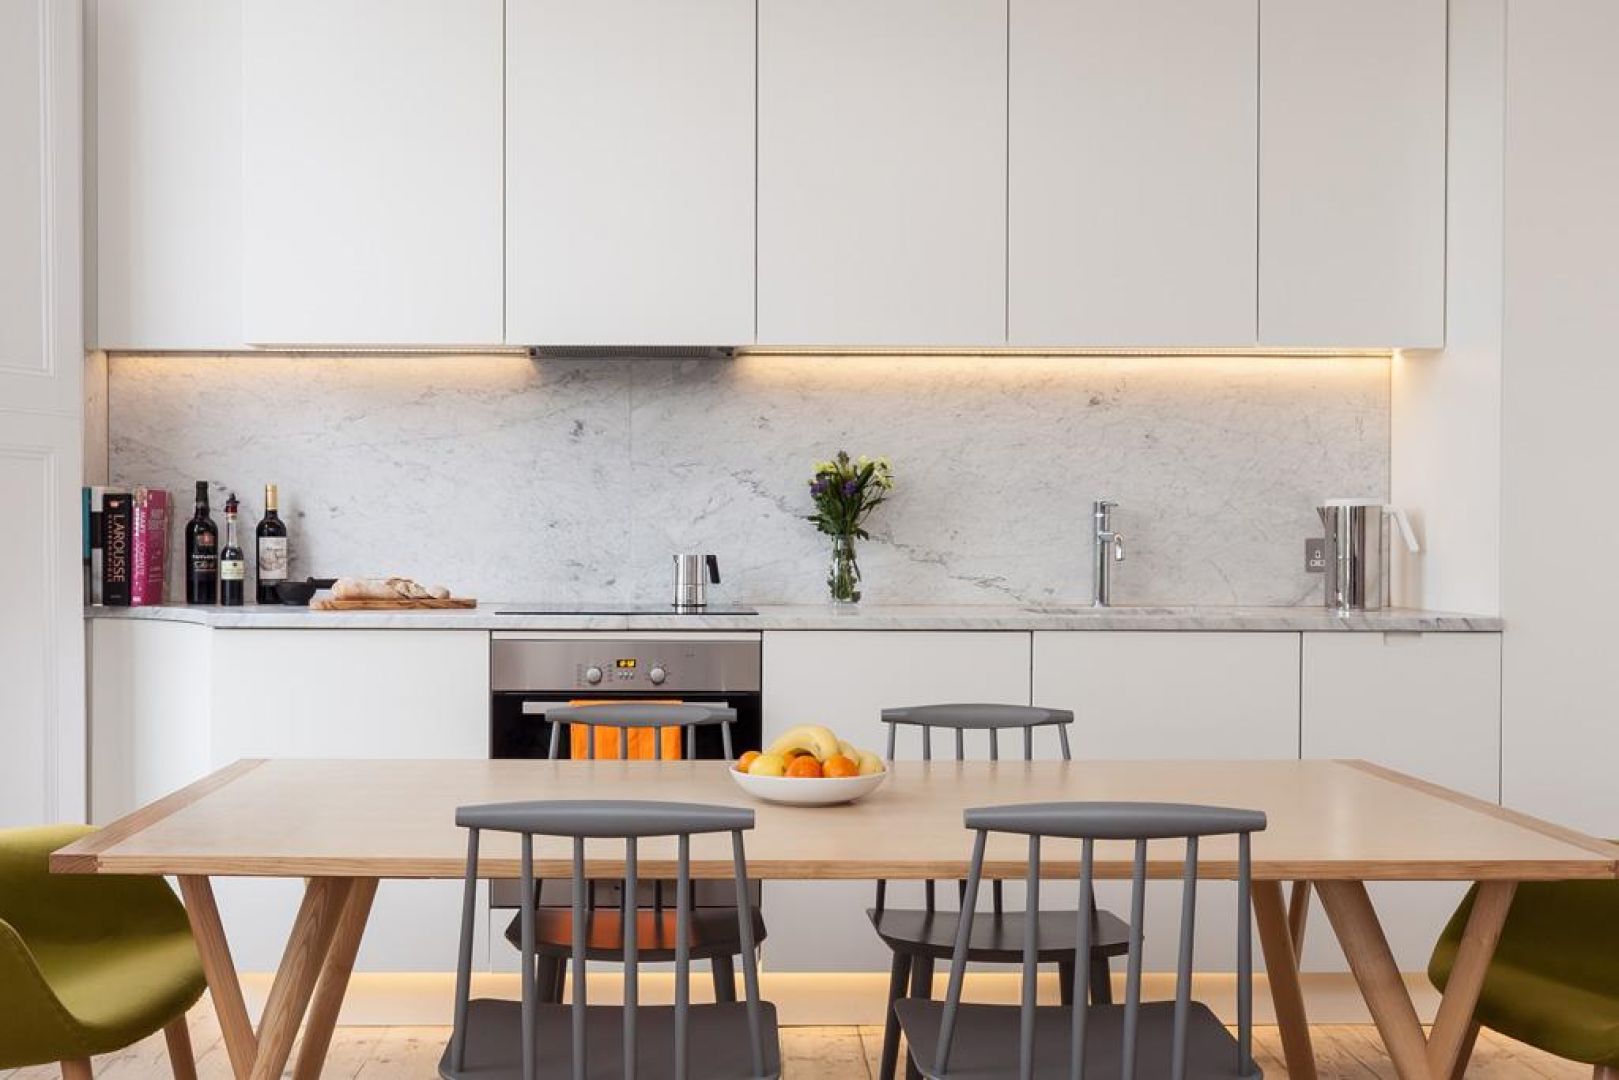 W kuchni zdecydowano się na proste, białe meble. Dzięki temu wnętrze nabiera nowoczesnego, minimalistycznego charakteru. Fot. Architecture for London 